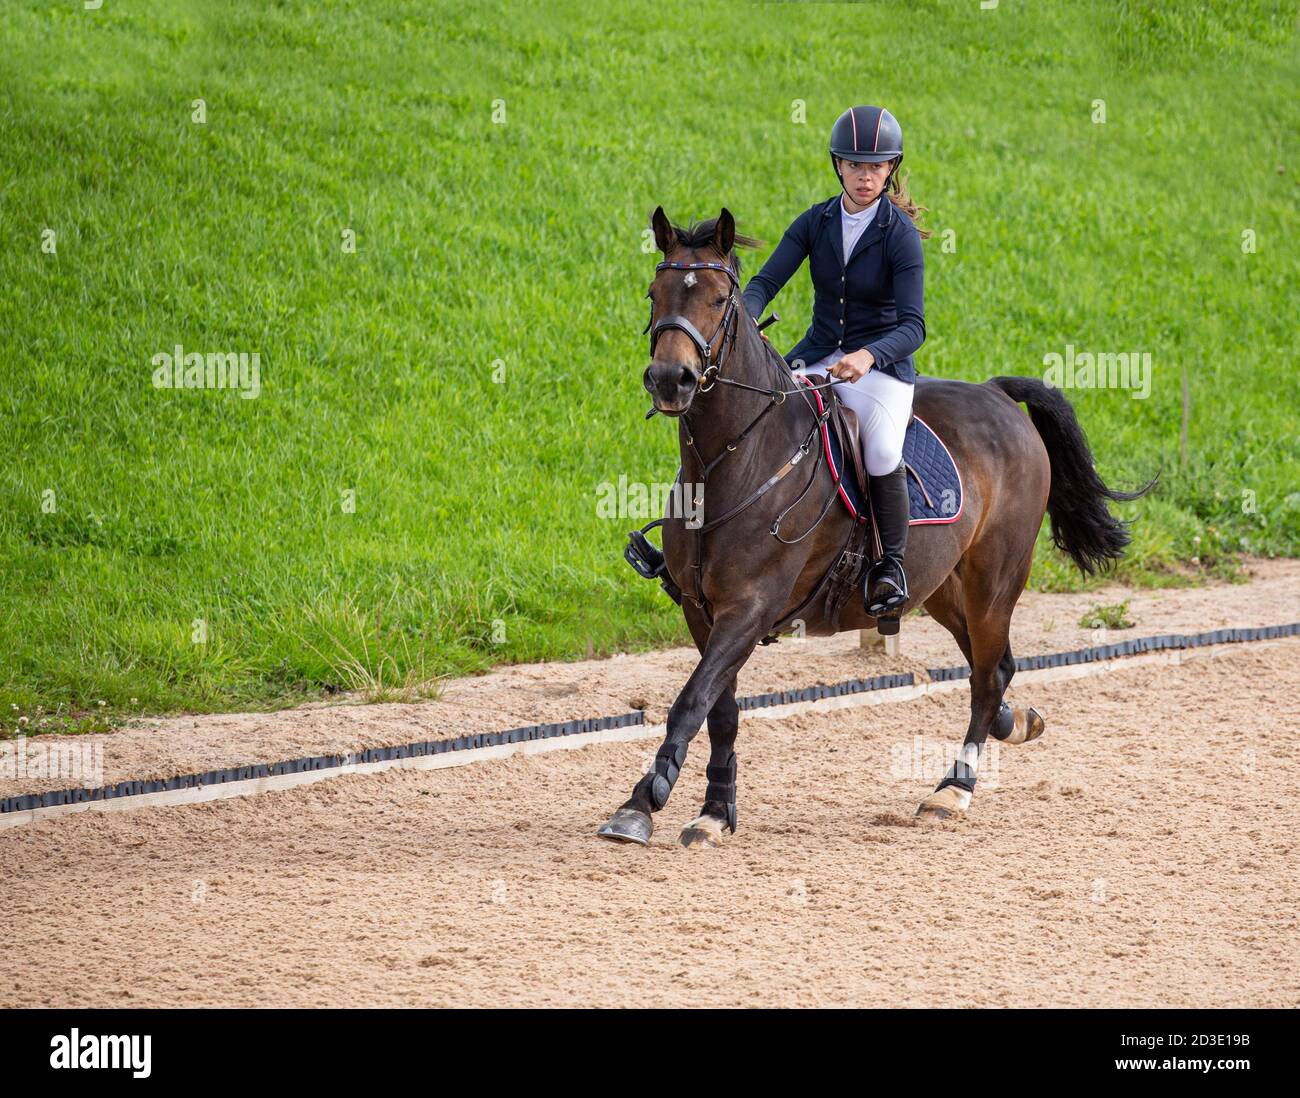 Un cavallo che salta in mostra trotting insieme ad una giovane cavaliere equestre che si consentra sulla pratica del suo sport. Foto Stock